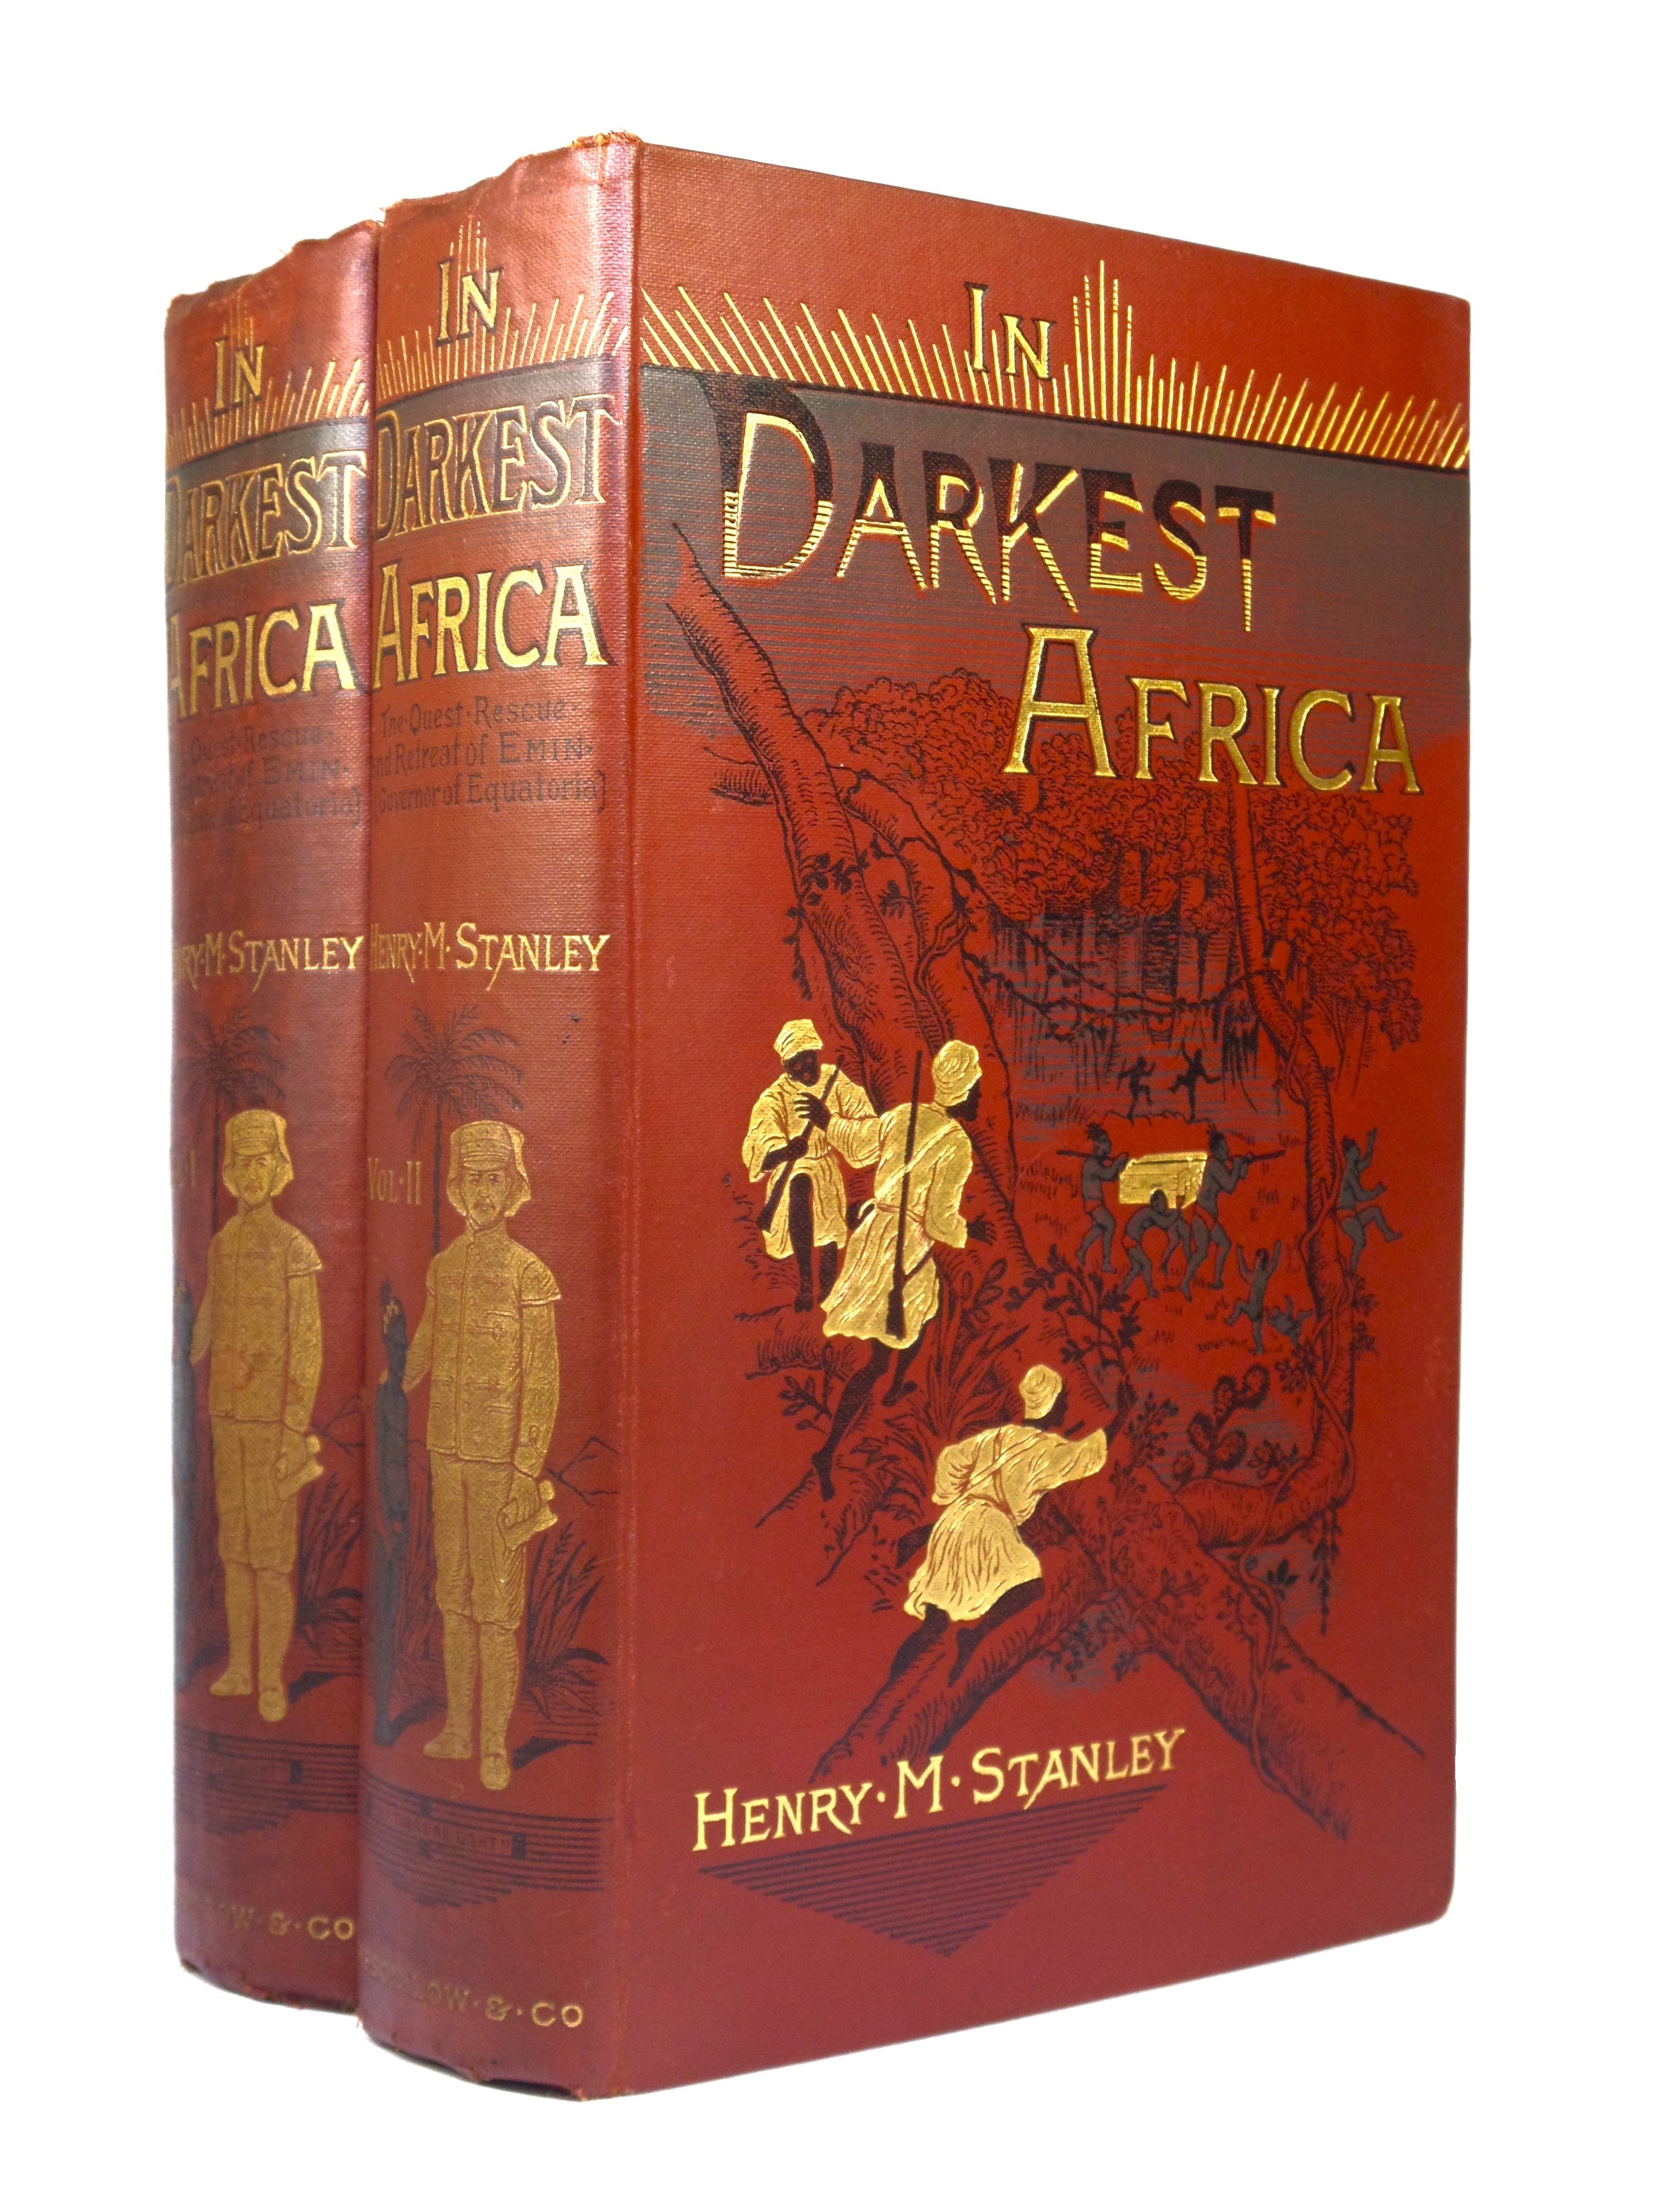 IN DARKEST AFRICA BY HENRY M. STANLEY 1890 FIRST EDITION